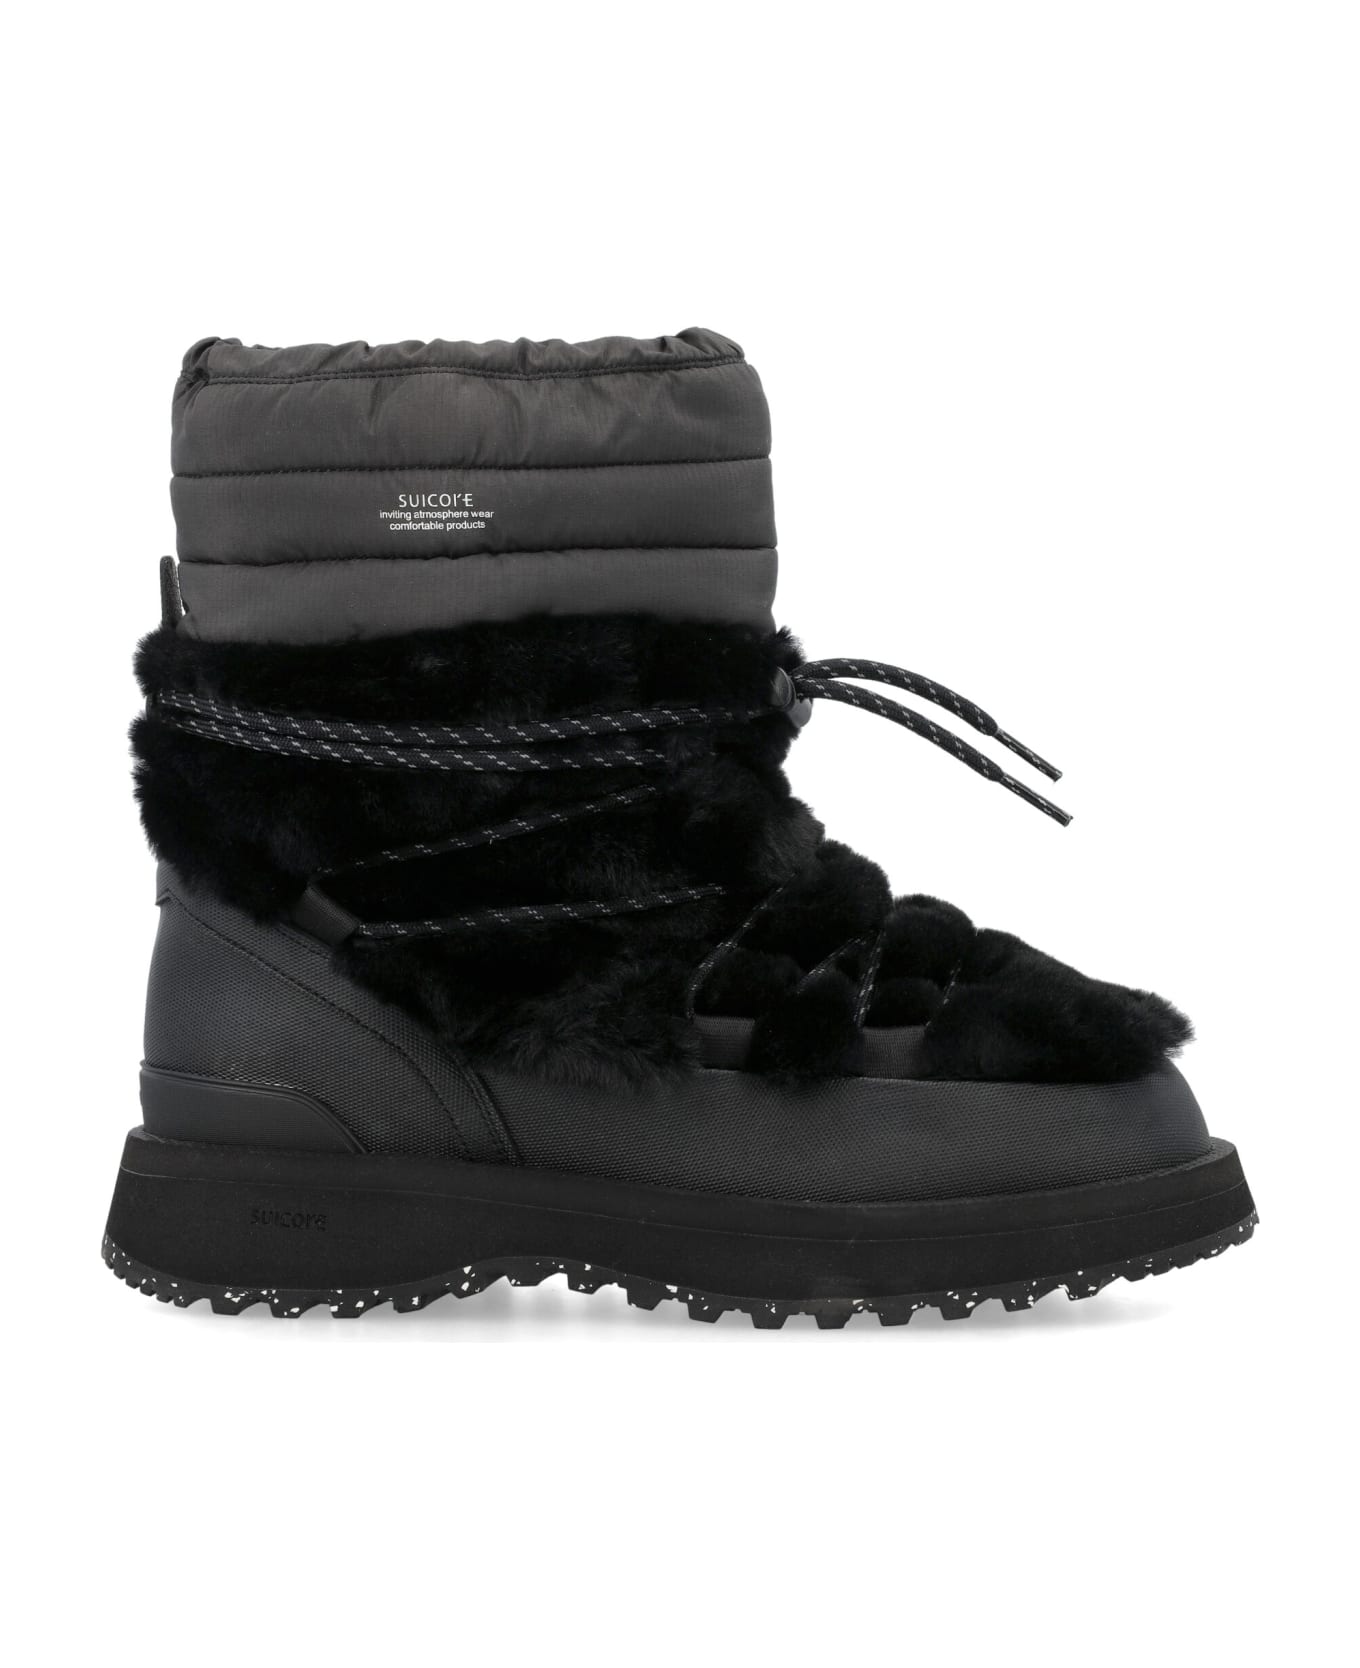 SUICOKE Bower Boots - BLACK